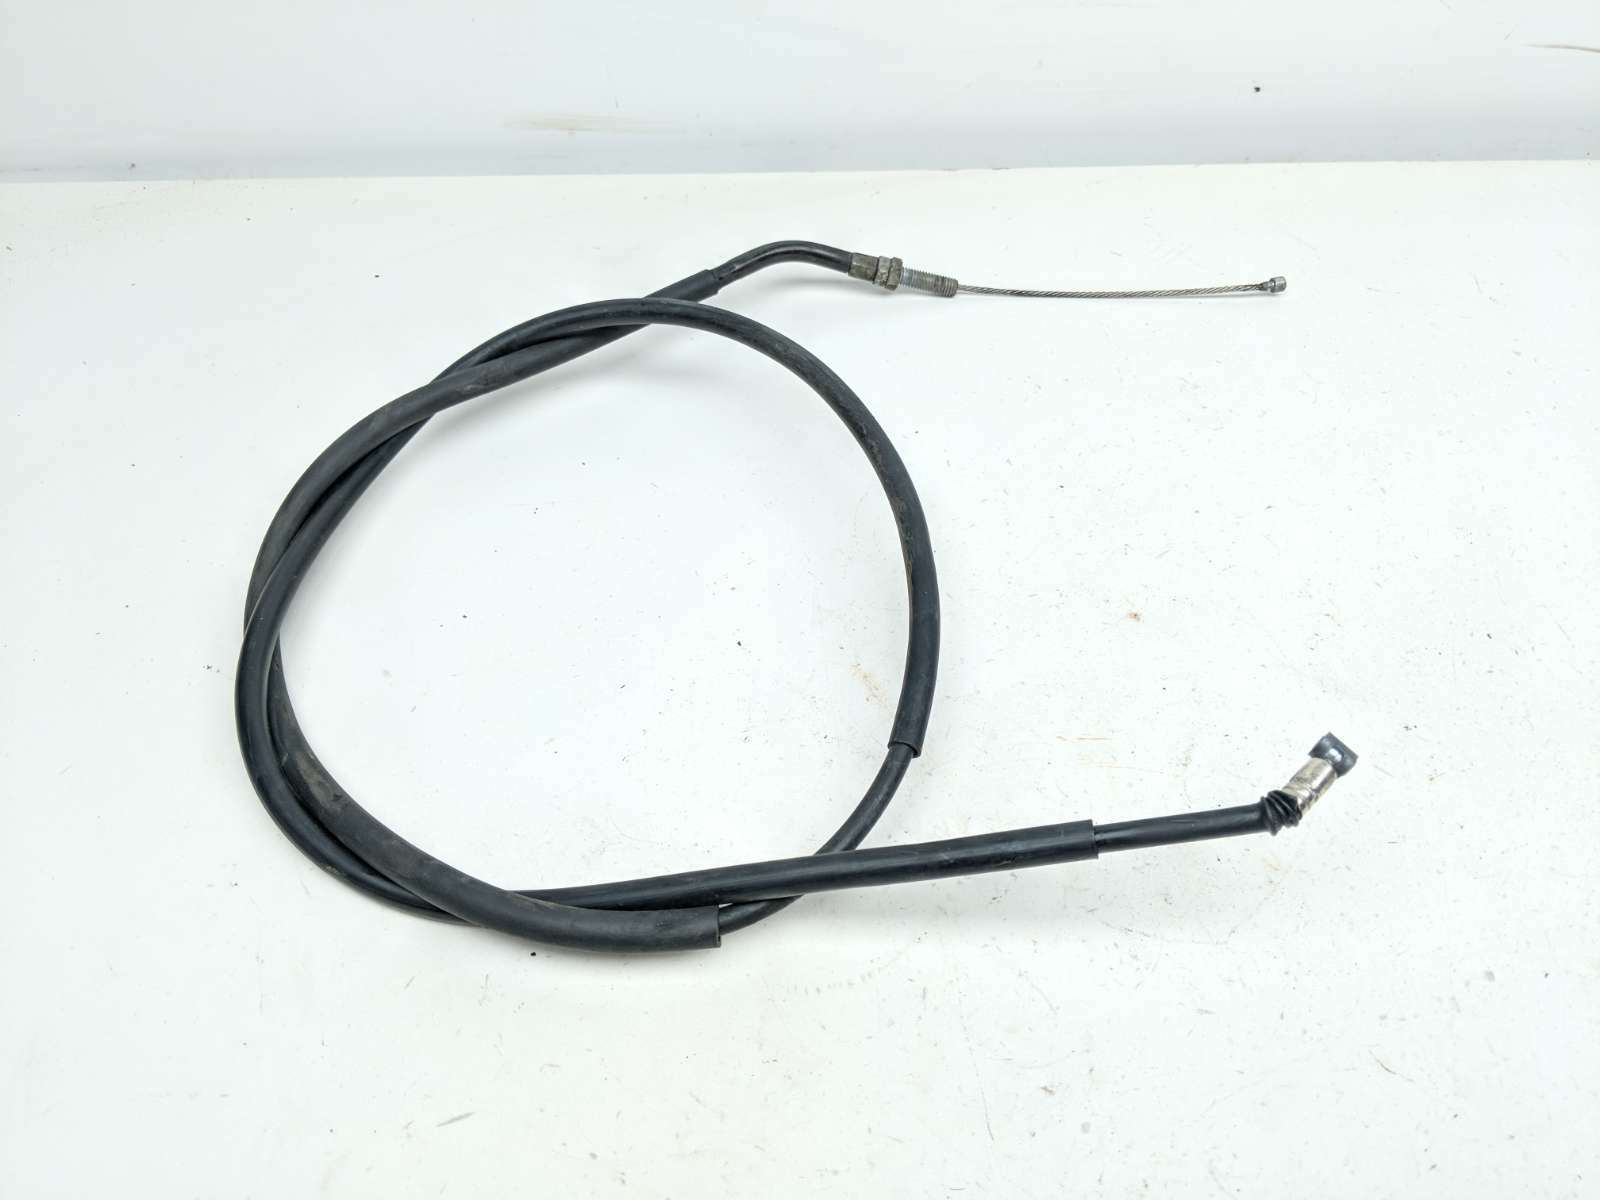 04 Suzuki VL 800 Volusia Clutch Cable Line